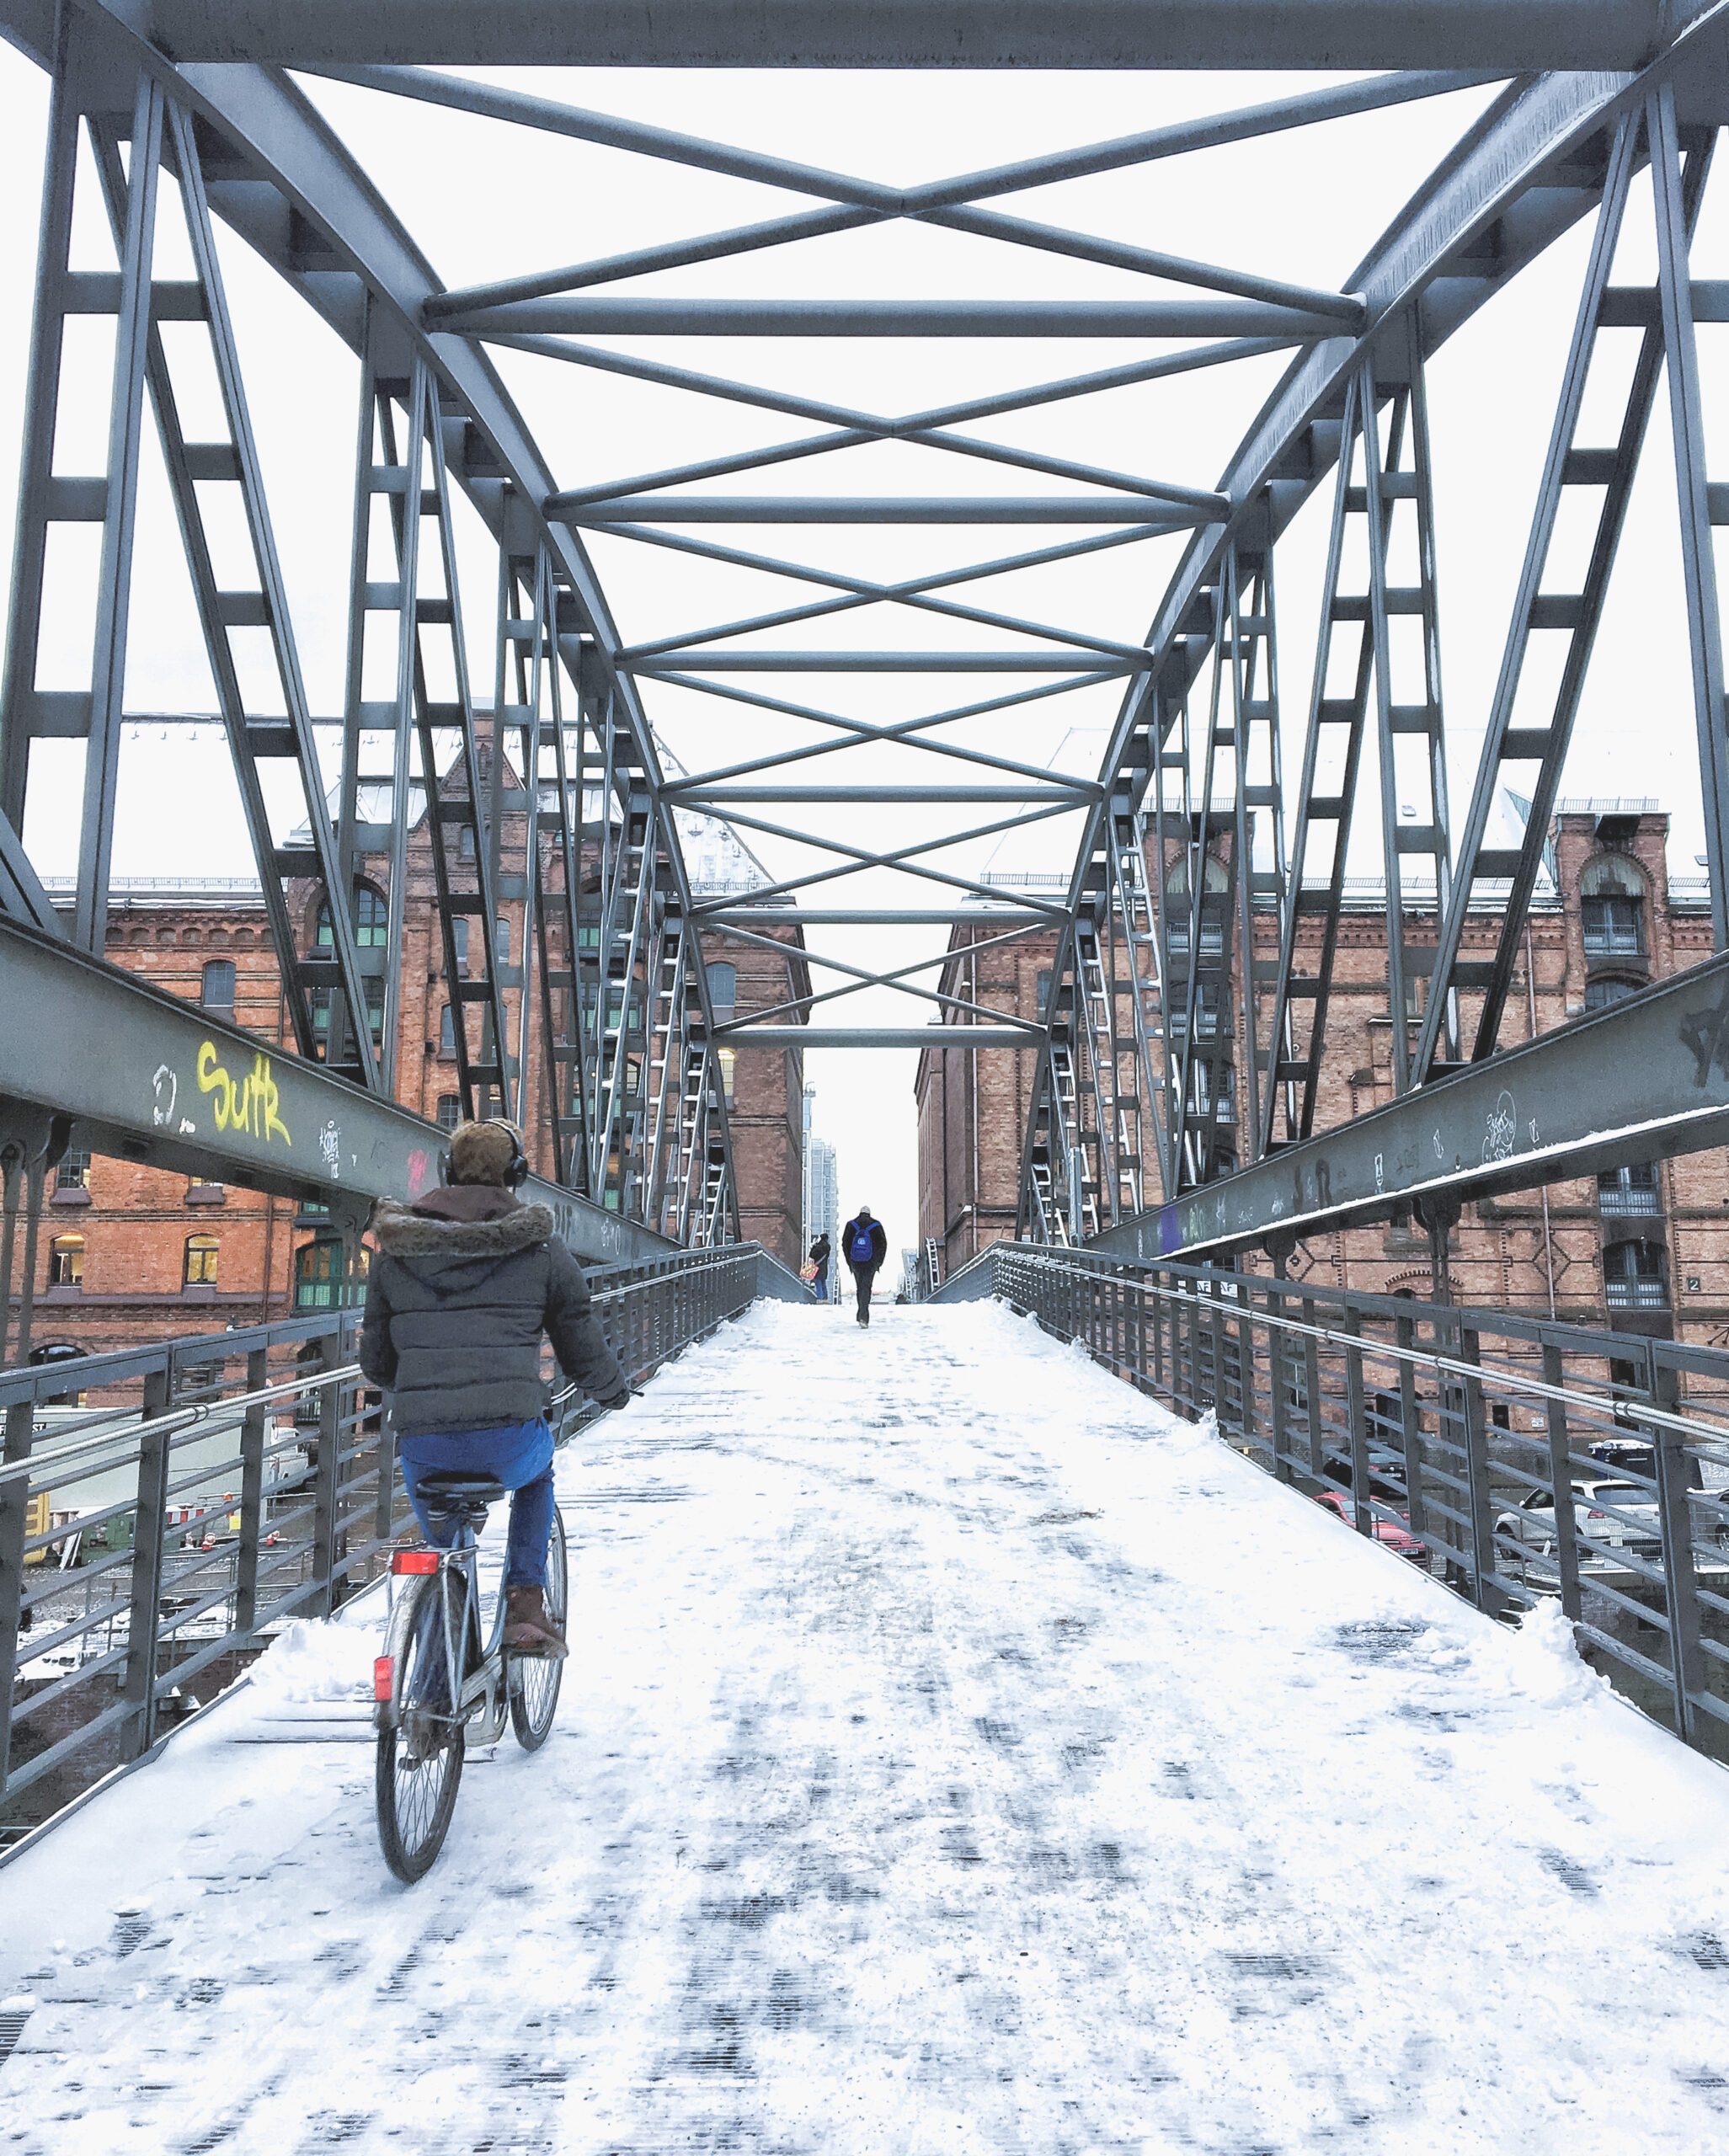 Fototipps für Hamburg im Winter: Der Kibbelsteg